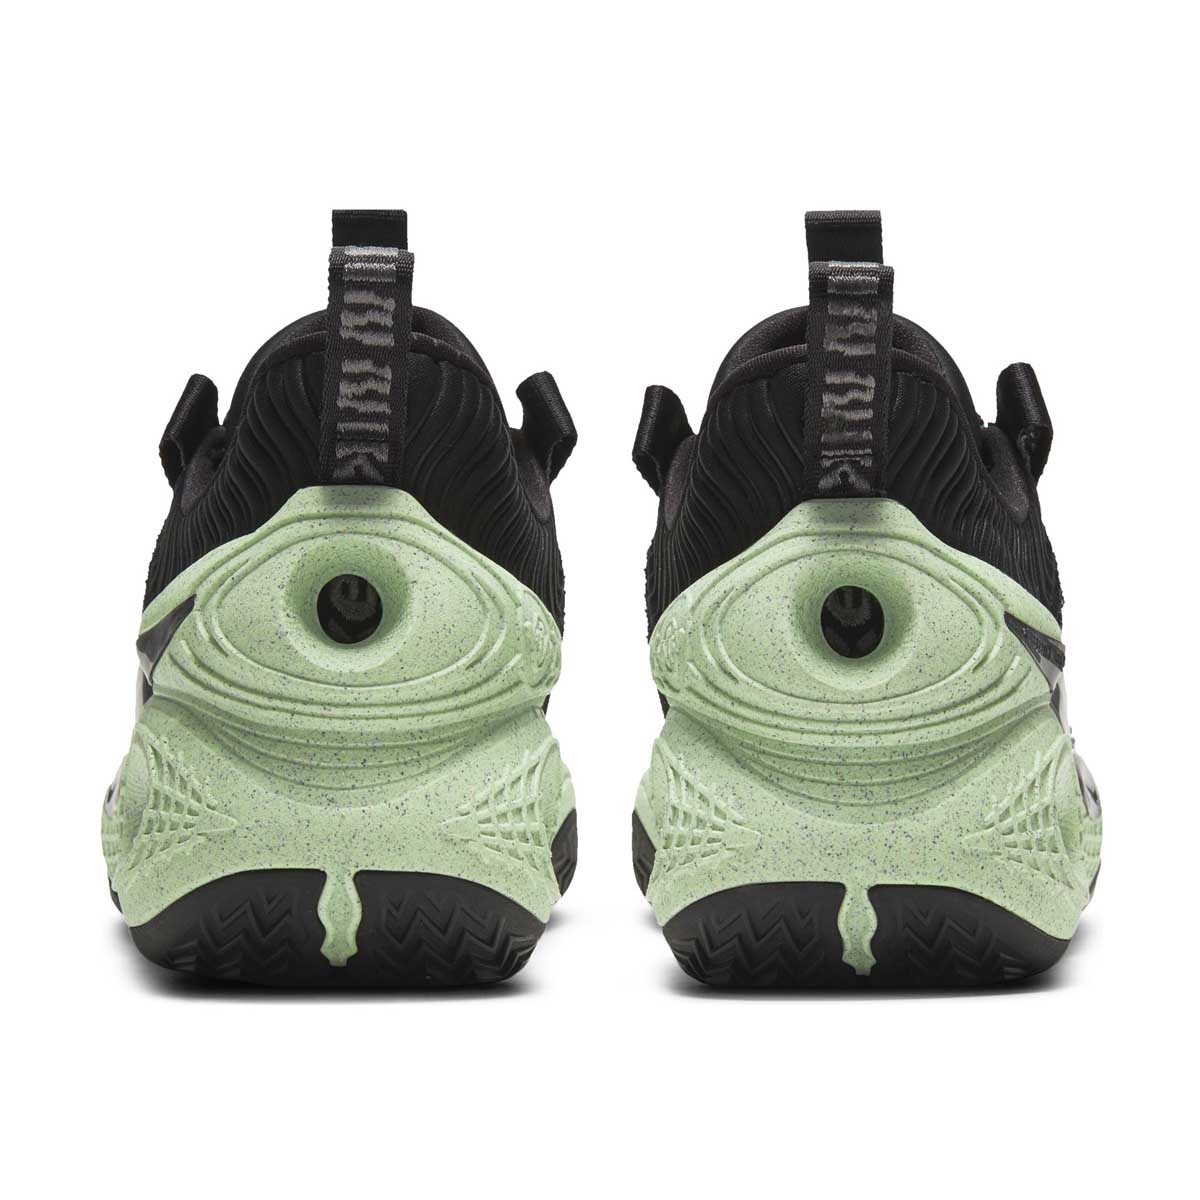 Nike Cosmic Unity Green Glow Basketball Shoe